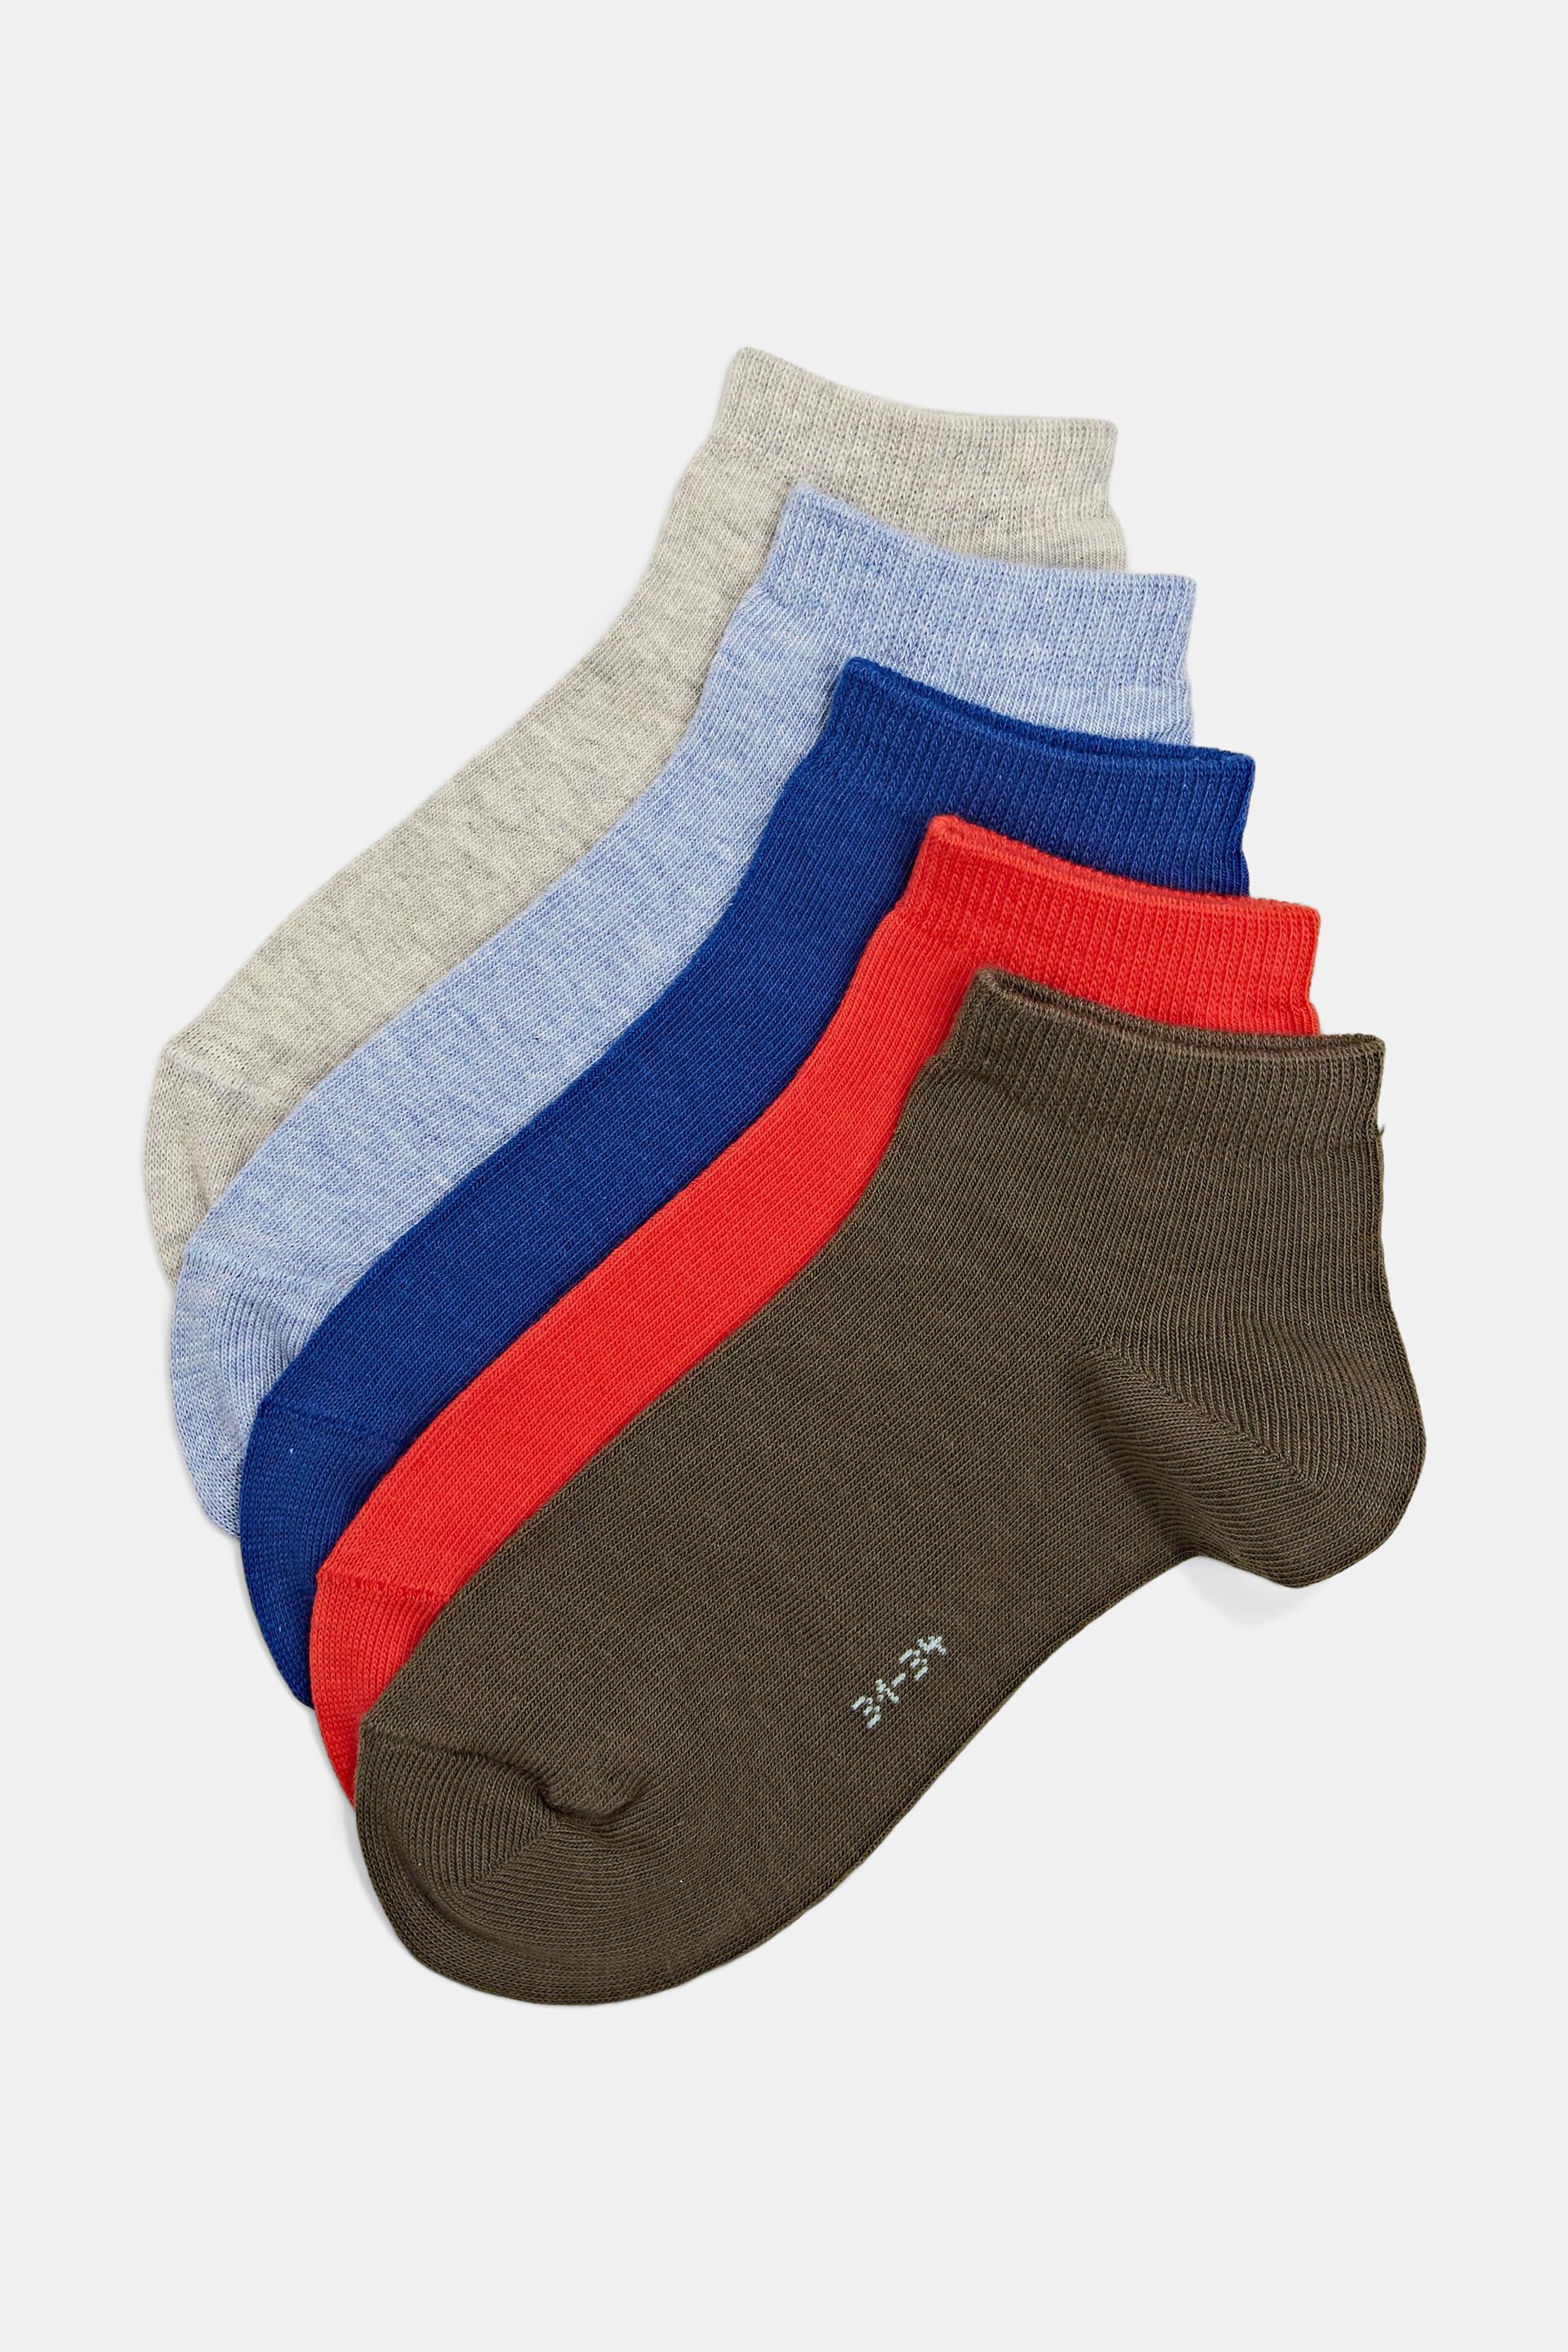 Packung mit 5 Paar einfarbigen Socken aus einer Bio-Baumwollmischung